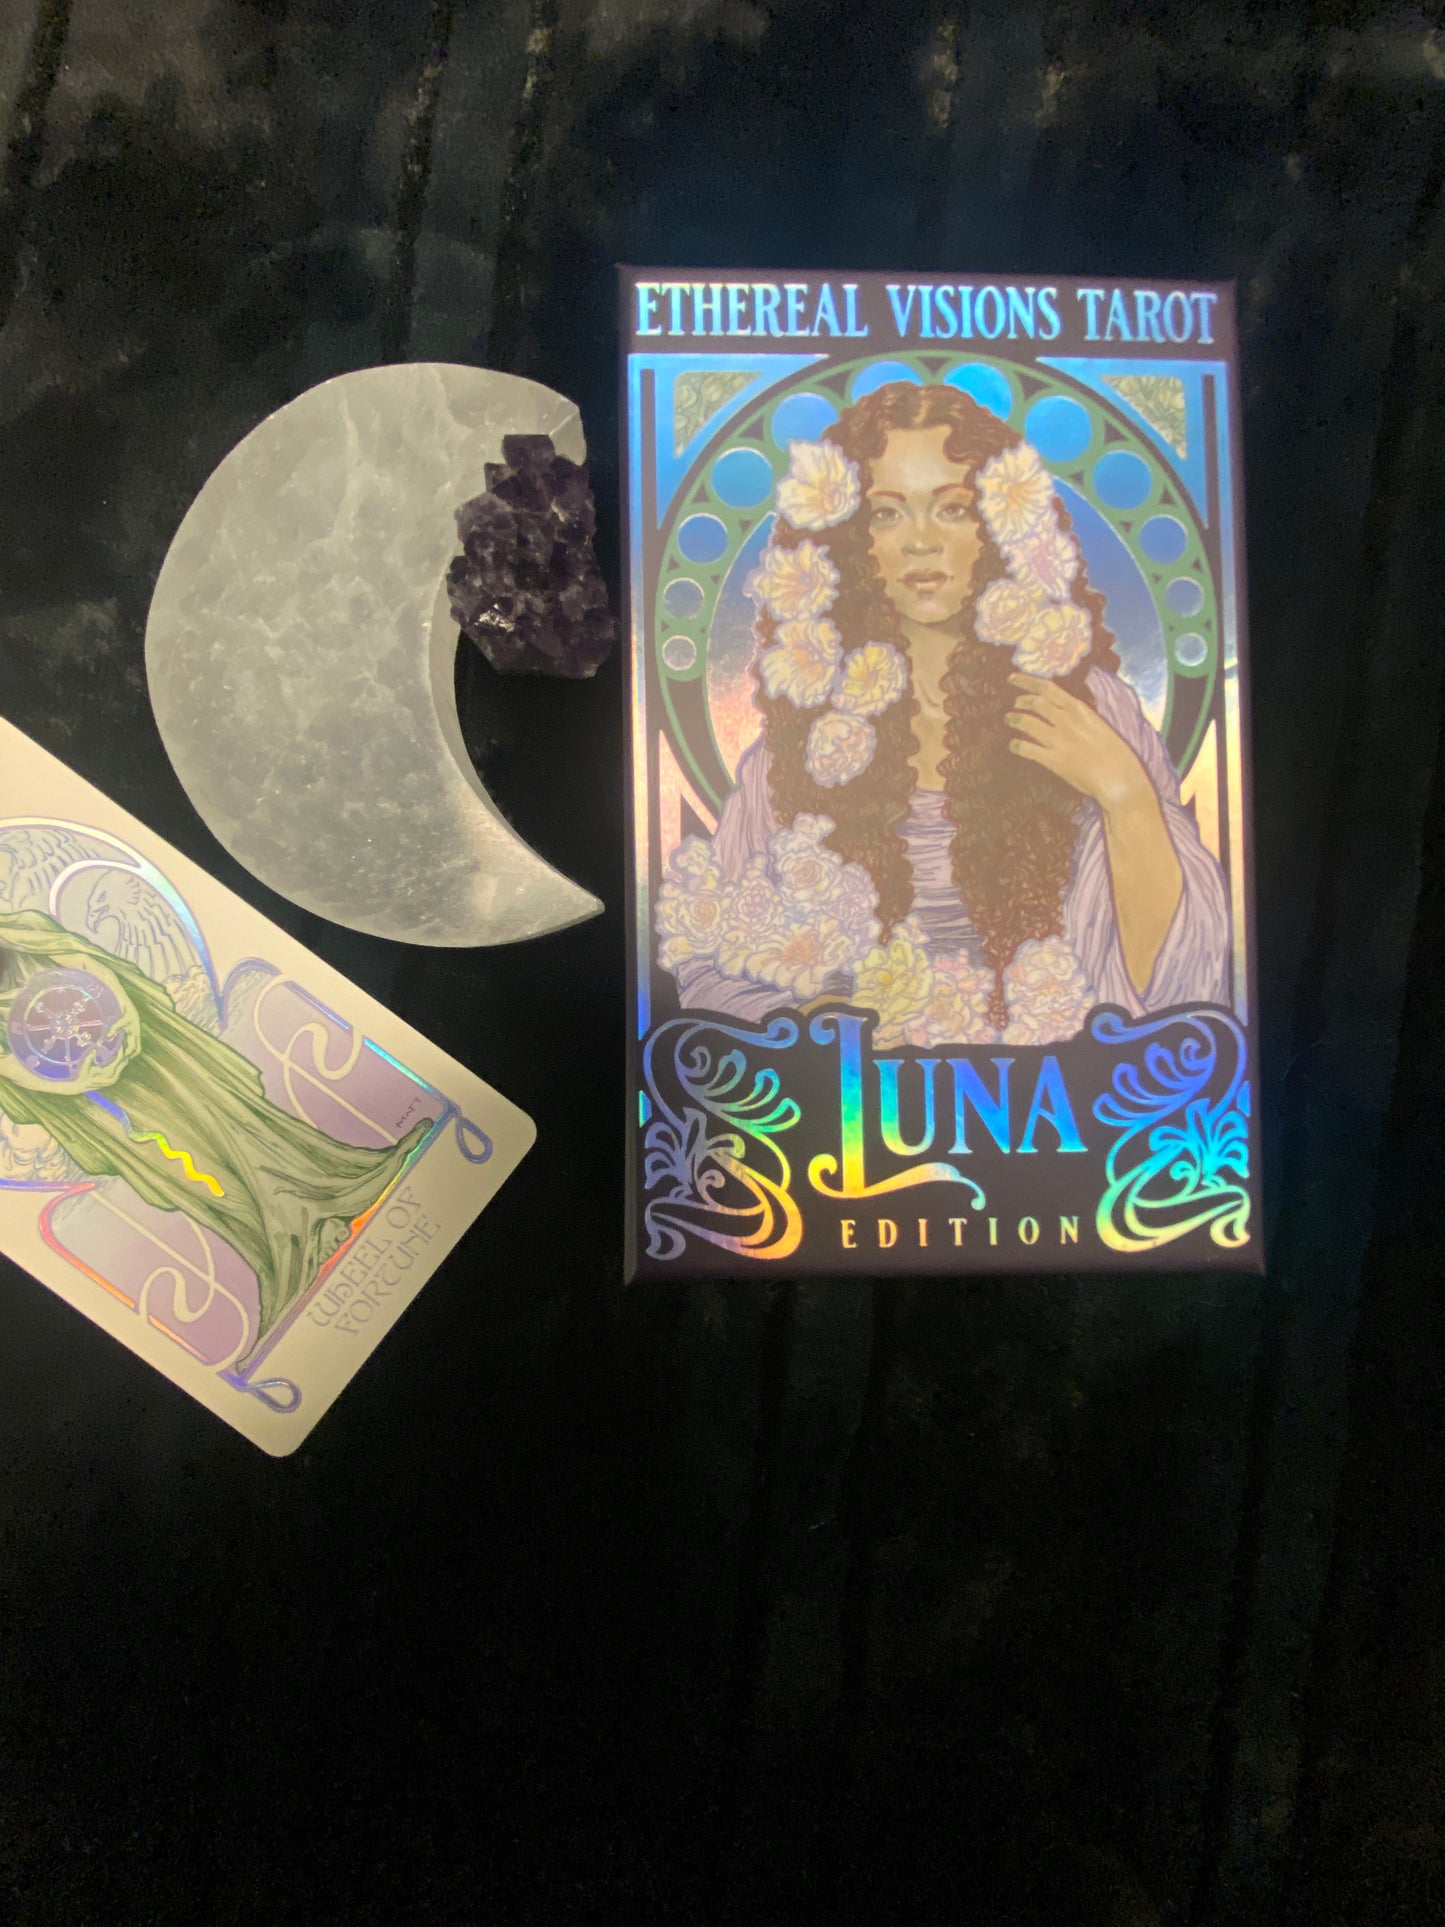 Ethereal Visions Tarot - Luna Edition by Matt Hughes